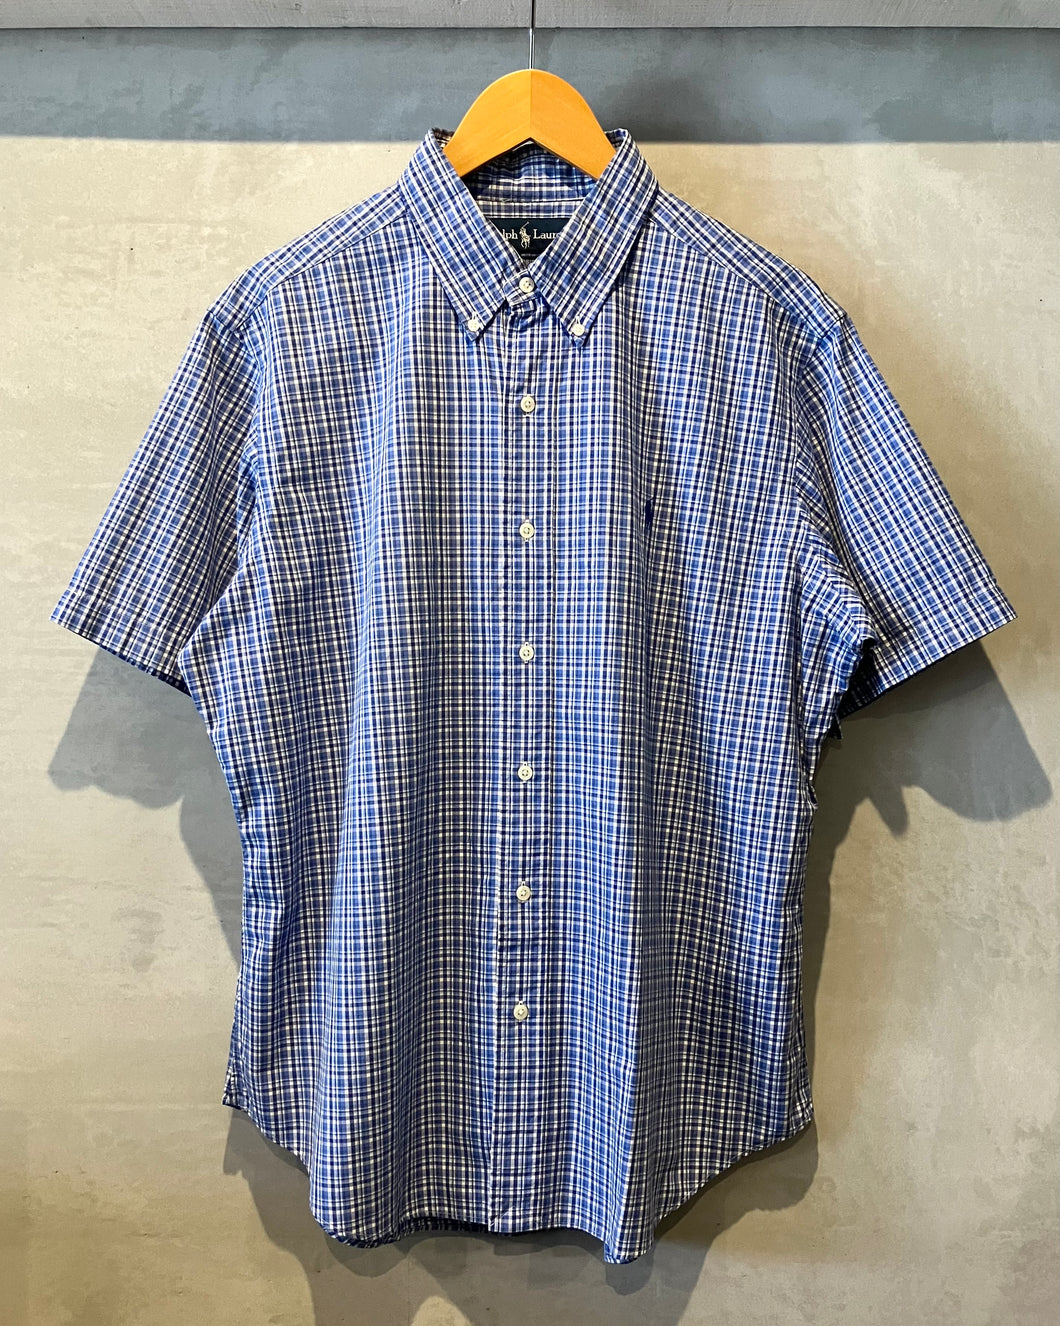 Ralph Lauren-S/S shirt-(size LL)